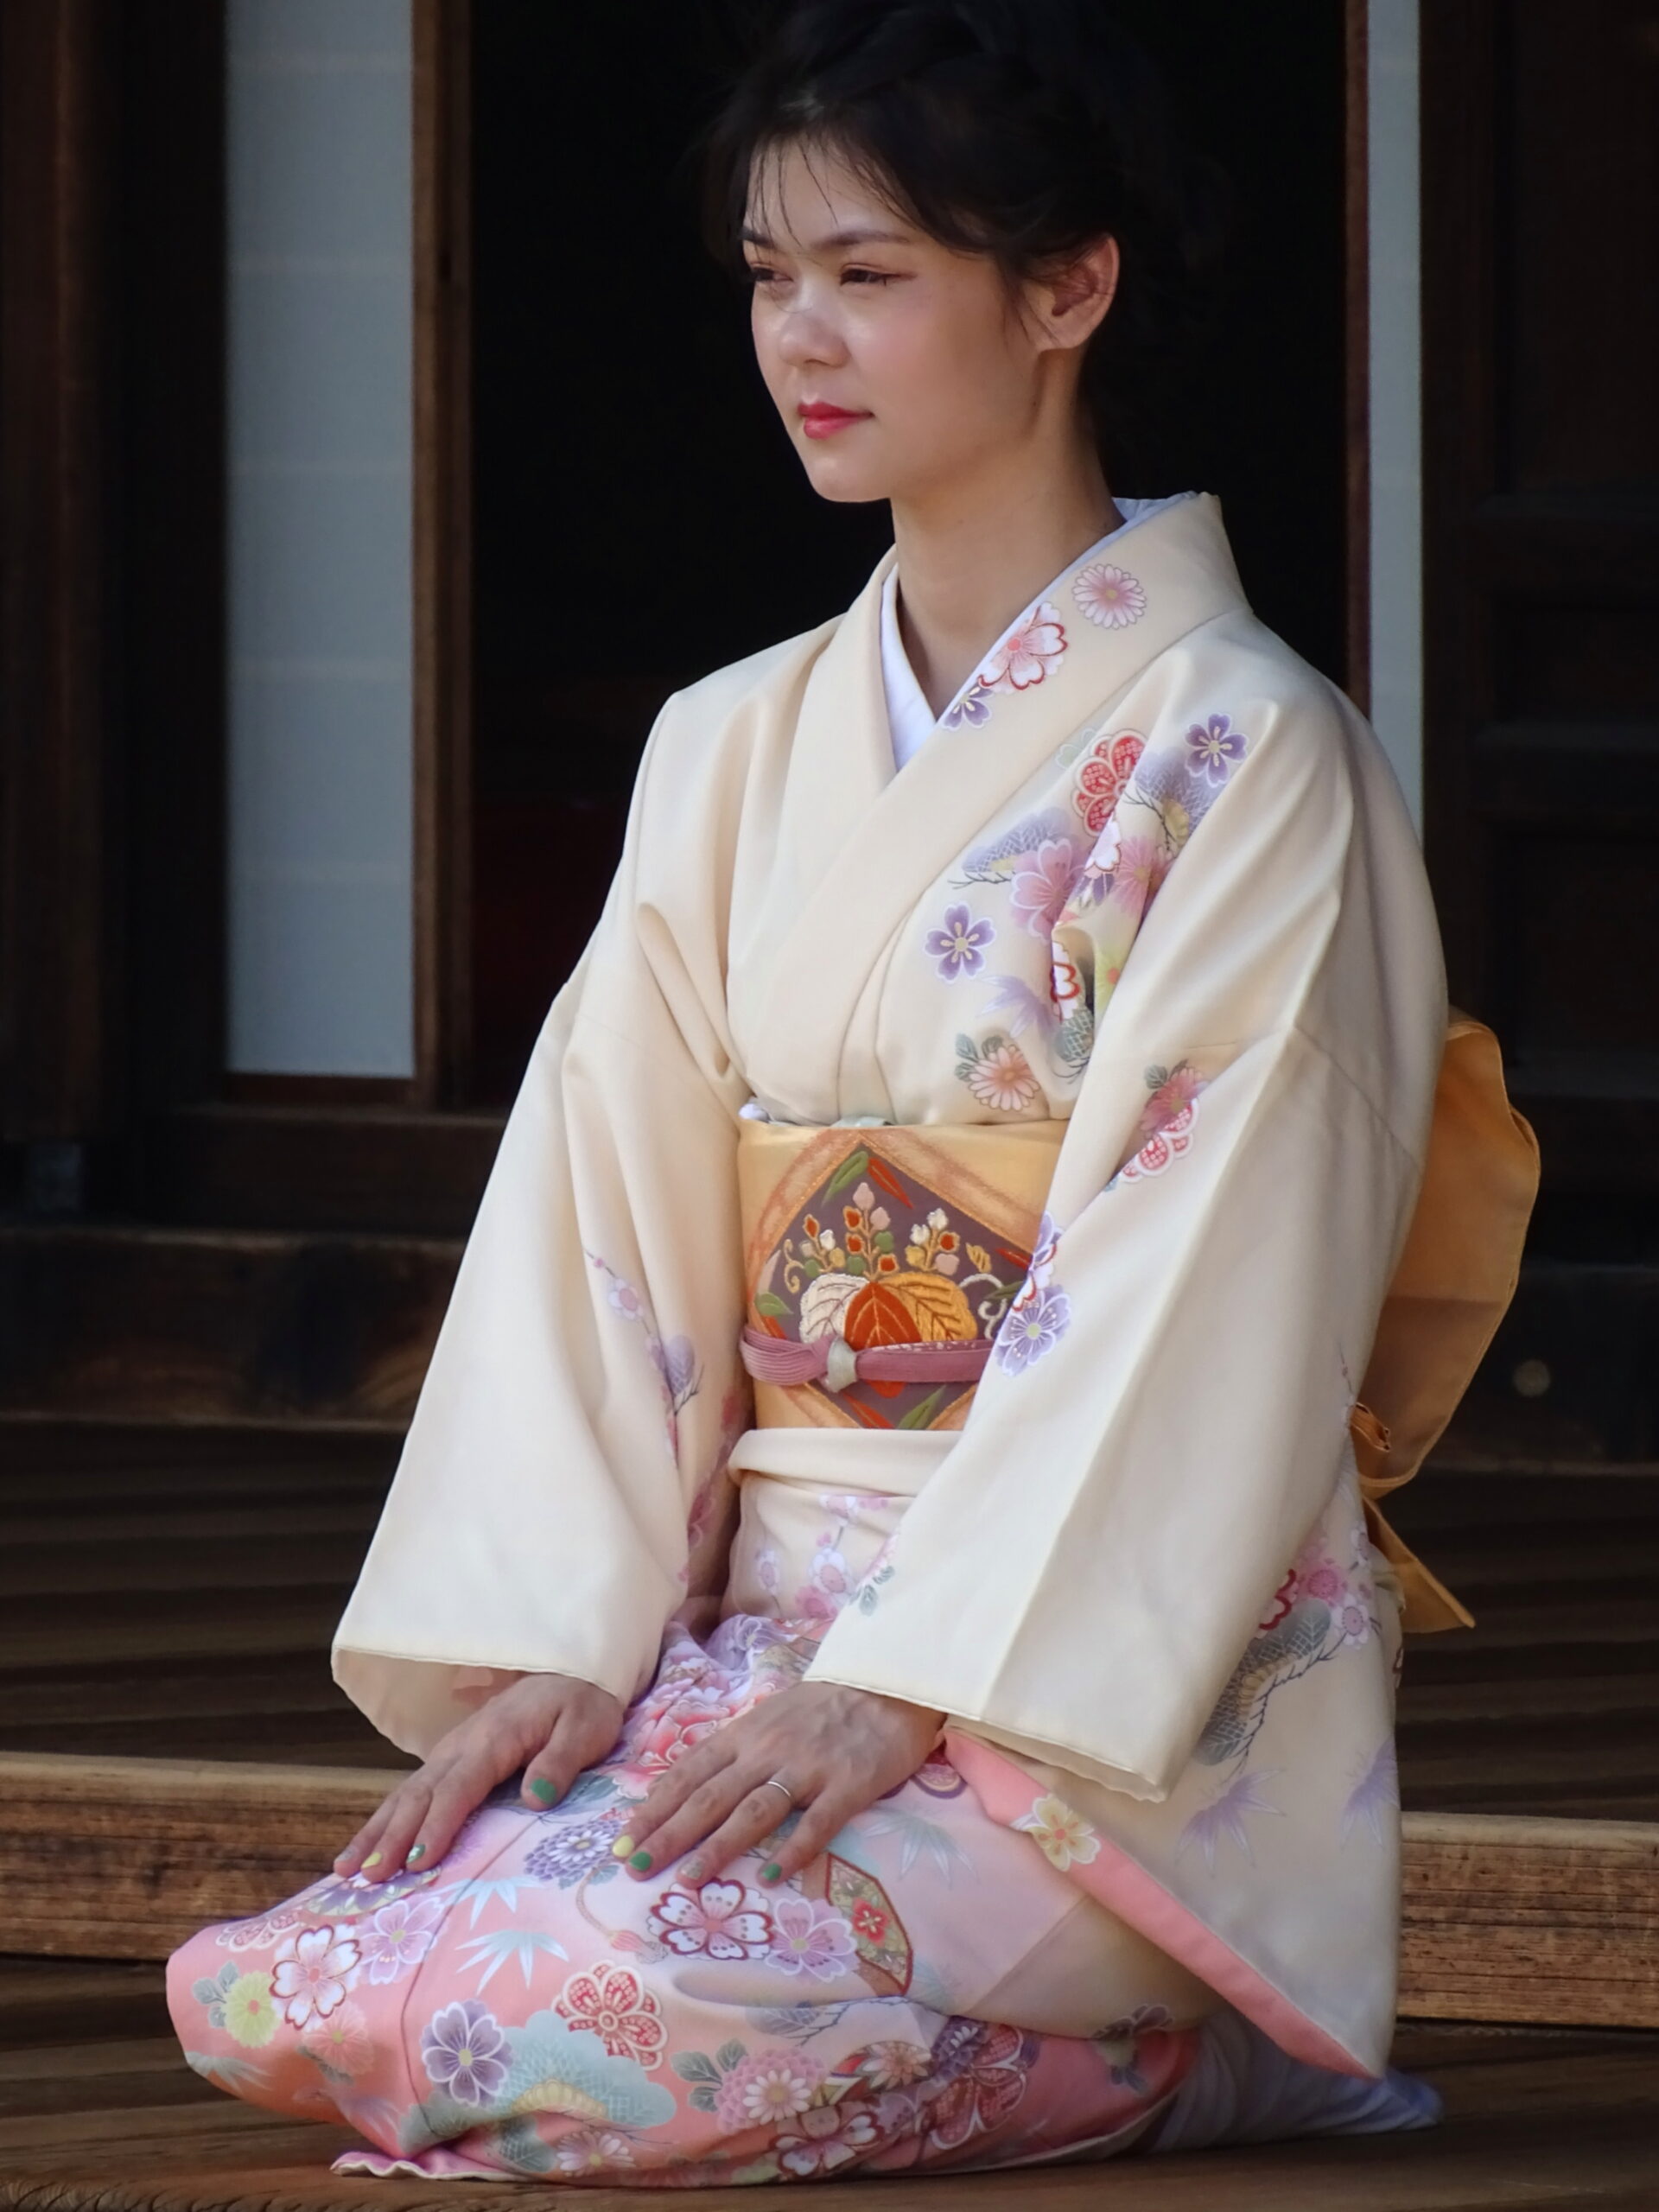 A woman wearing a KIMONO